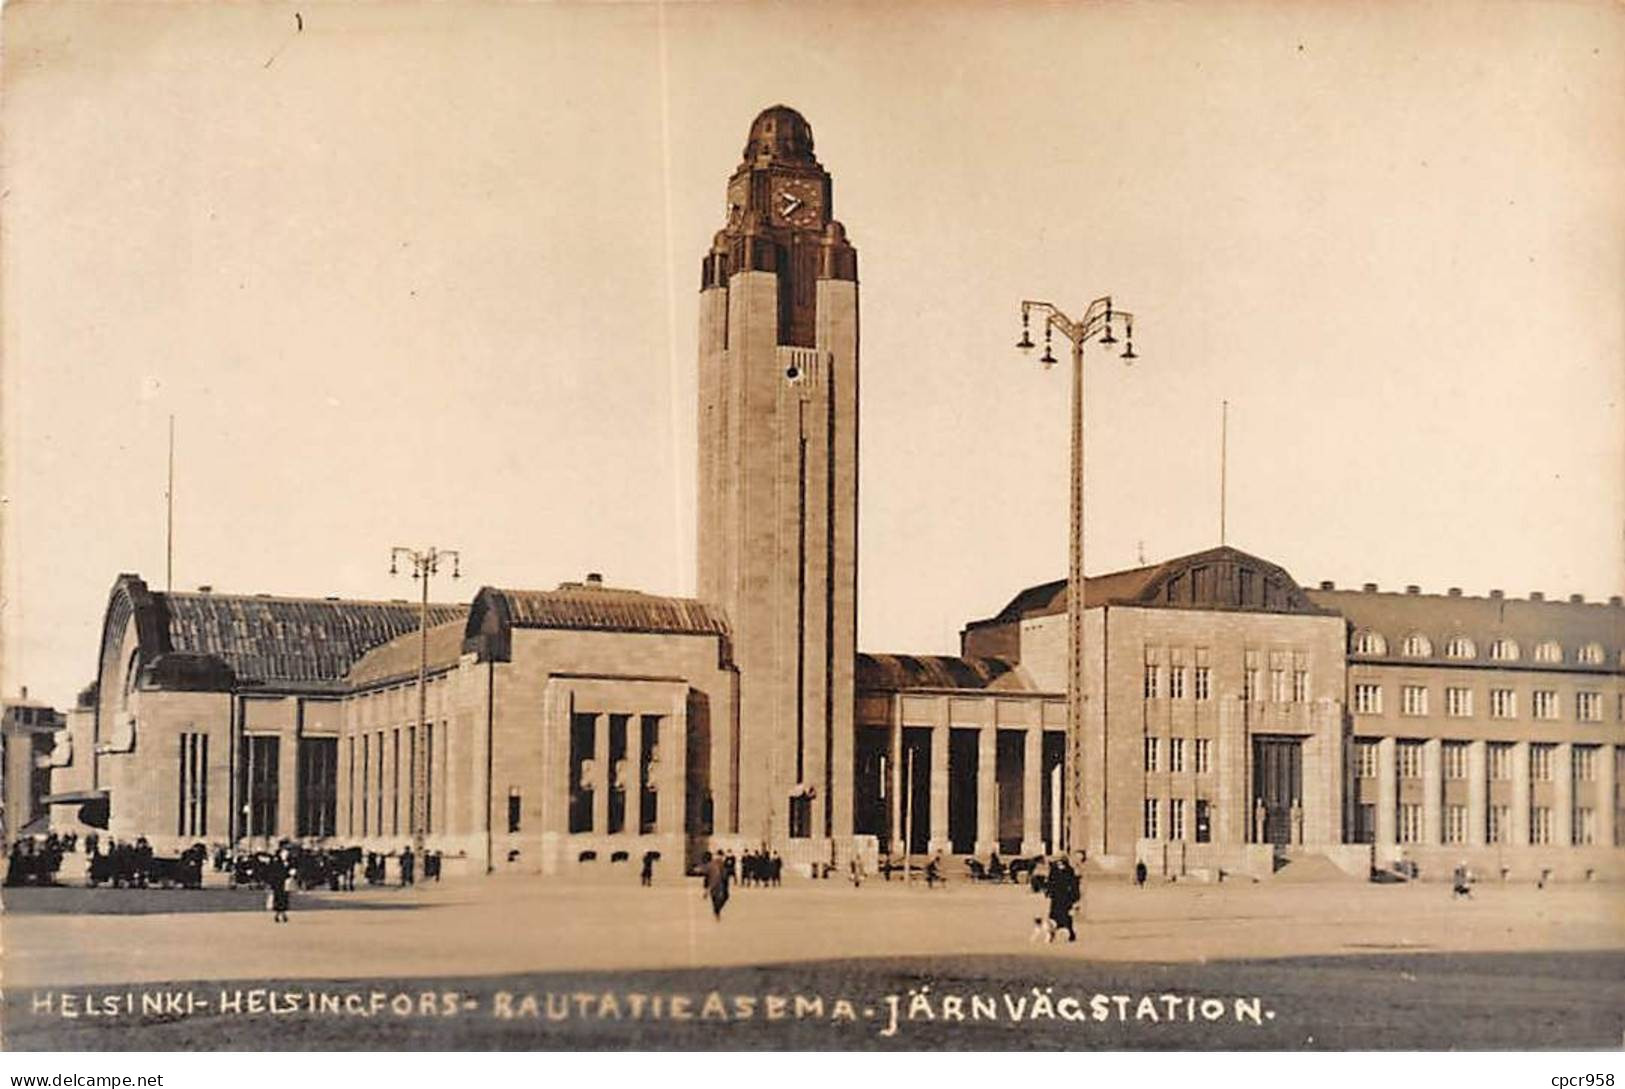 FINLAND - HELSINKI - SAN39276 - Helsingfors - Rautatieasema - Järnvägstation - Finnland